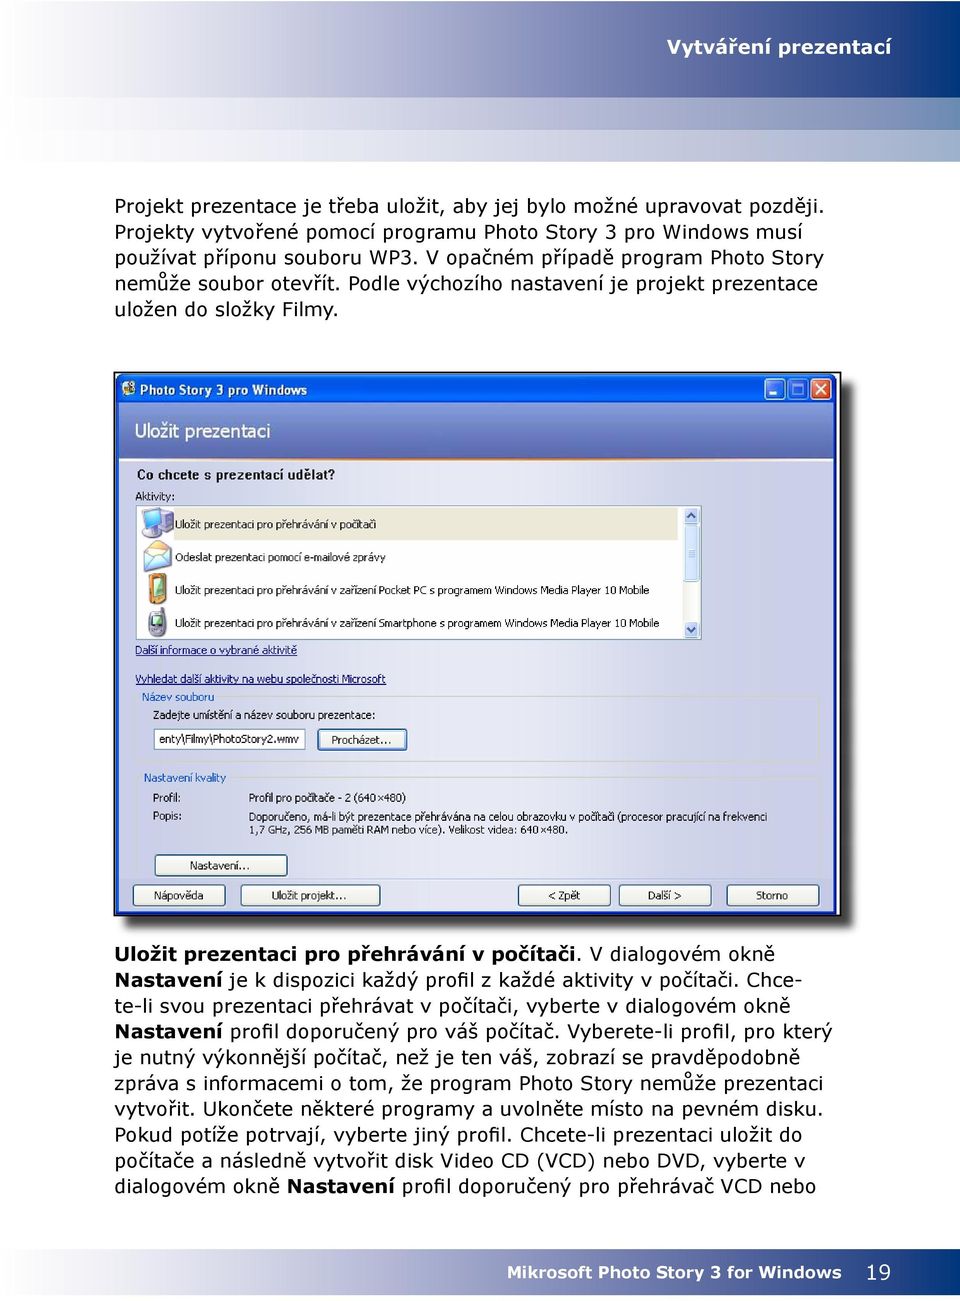 V dialogovém okně Nastavení je k dispozici každý profil z každé aktivity v počítači.